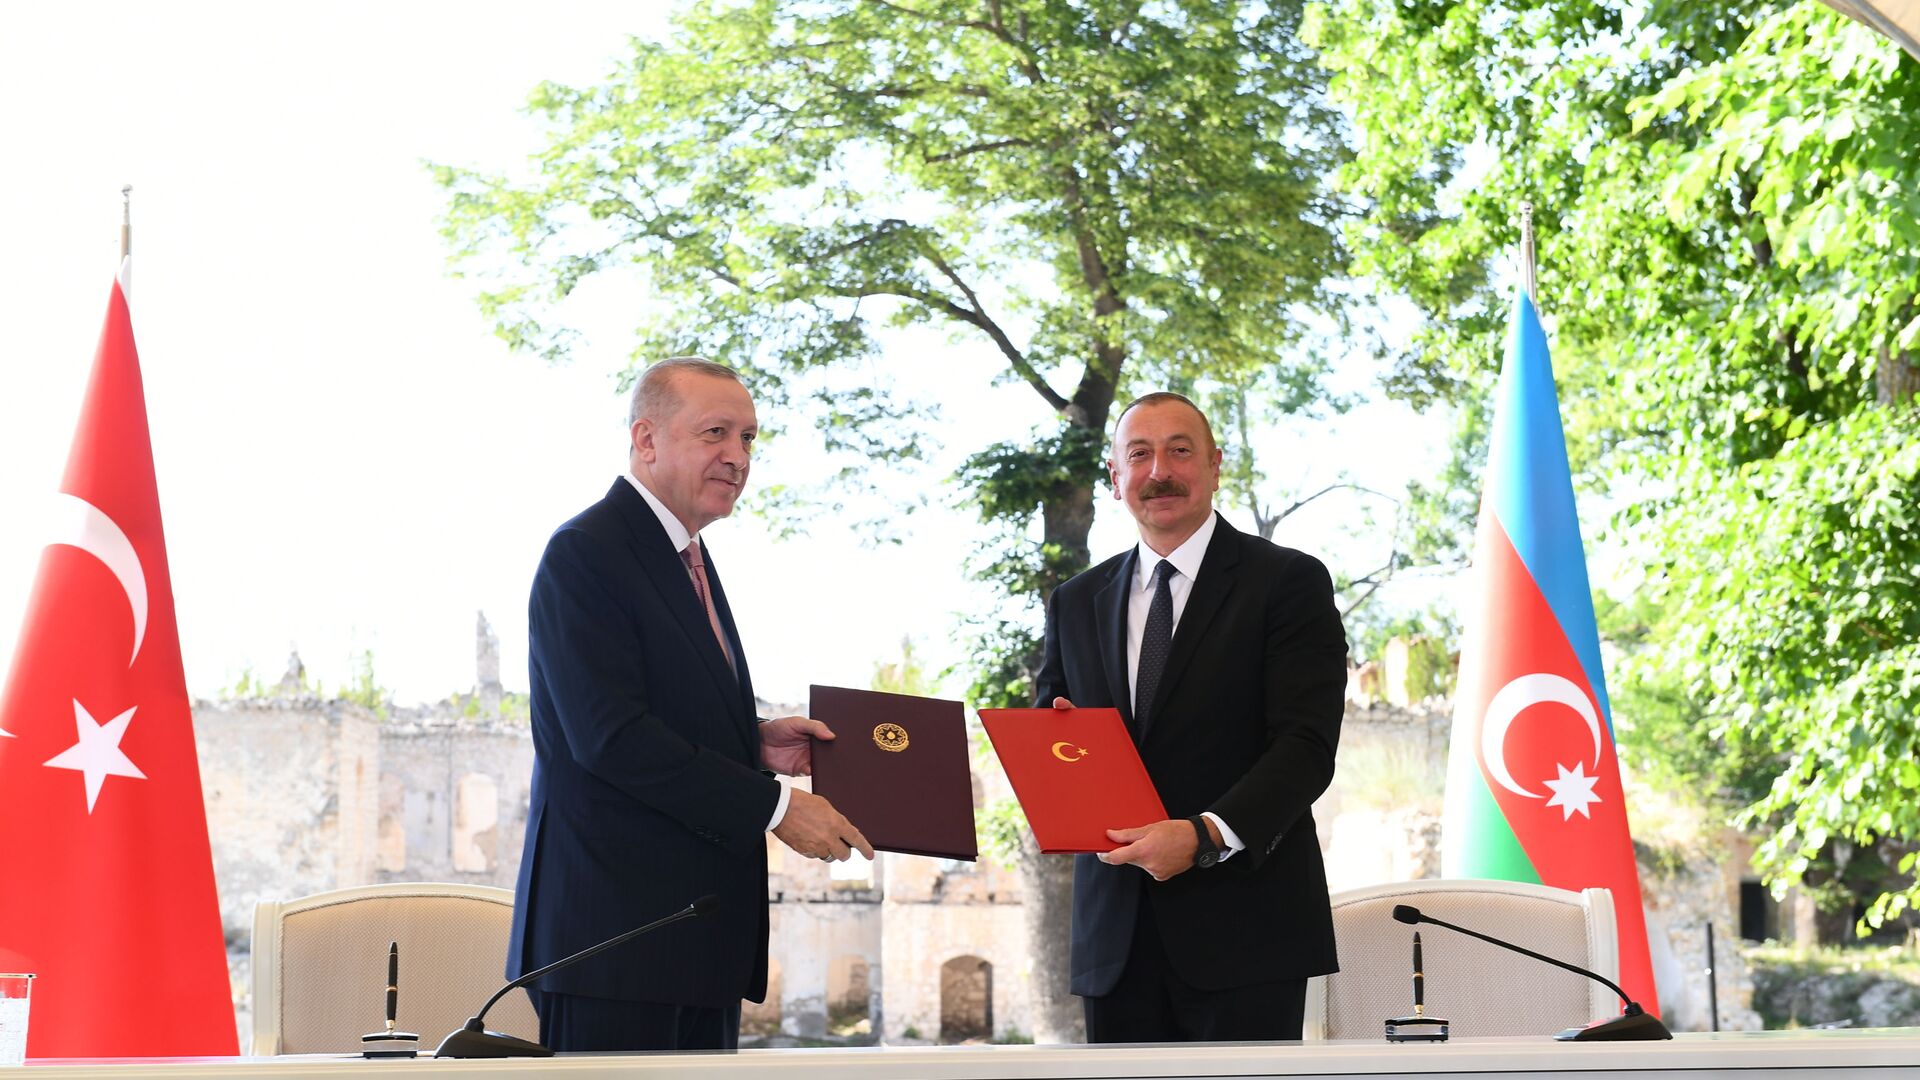 Ильхам Алиев и Реджеп Тайип Эрдоган во время подписания Шушинской декларации, фото из архива - Sputnik Азербайджан, 1920, 15.06.2022